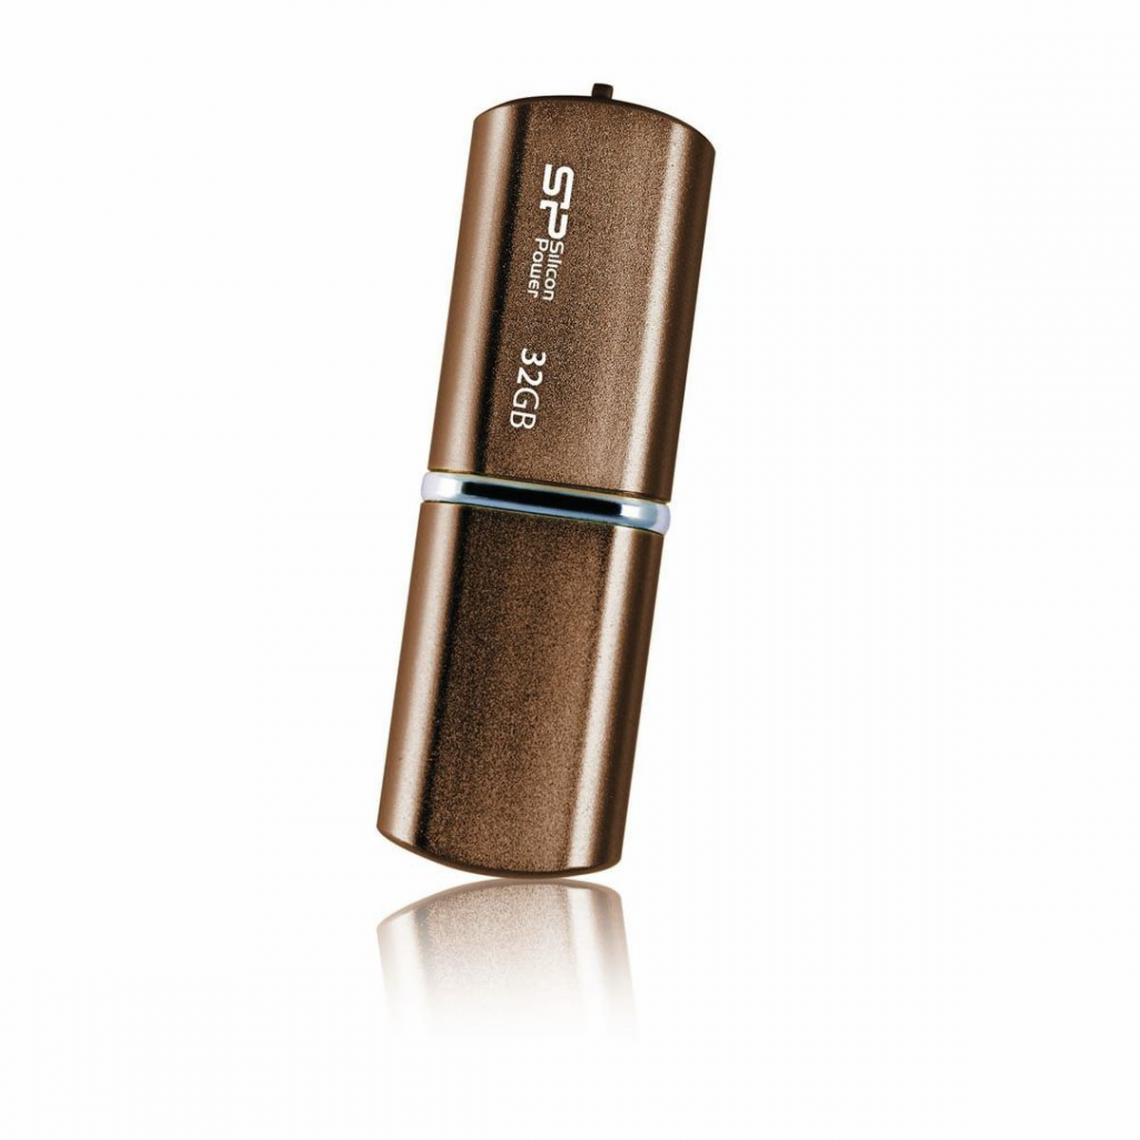 Silicon power - Luxmini 720 32 Go - Bronze Aluminium - Clés USB